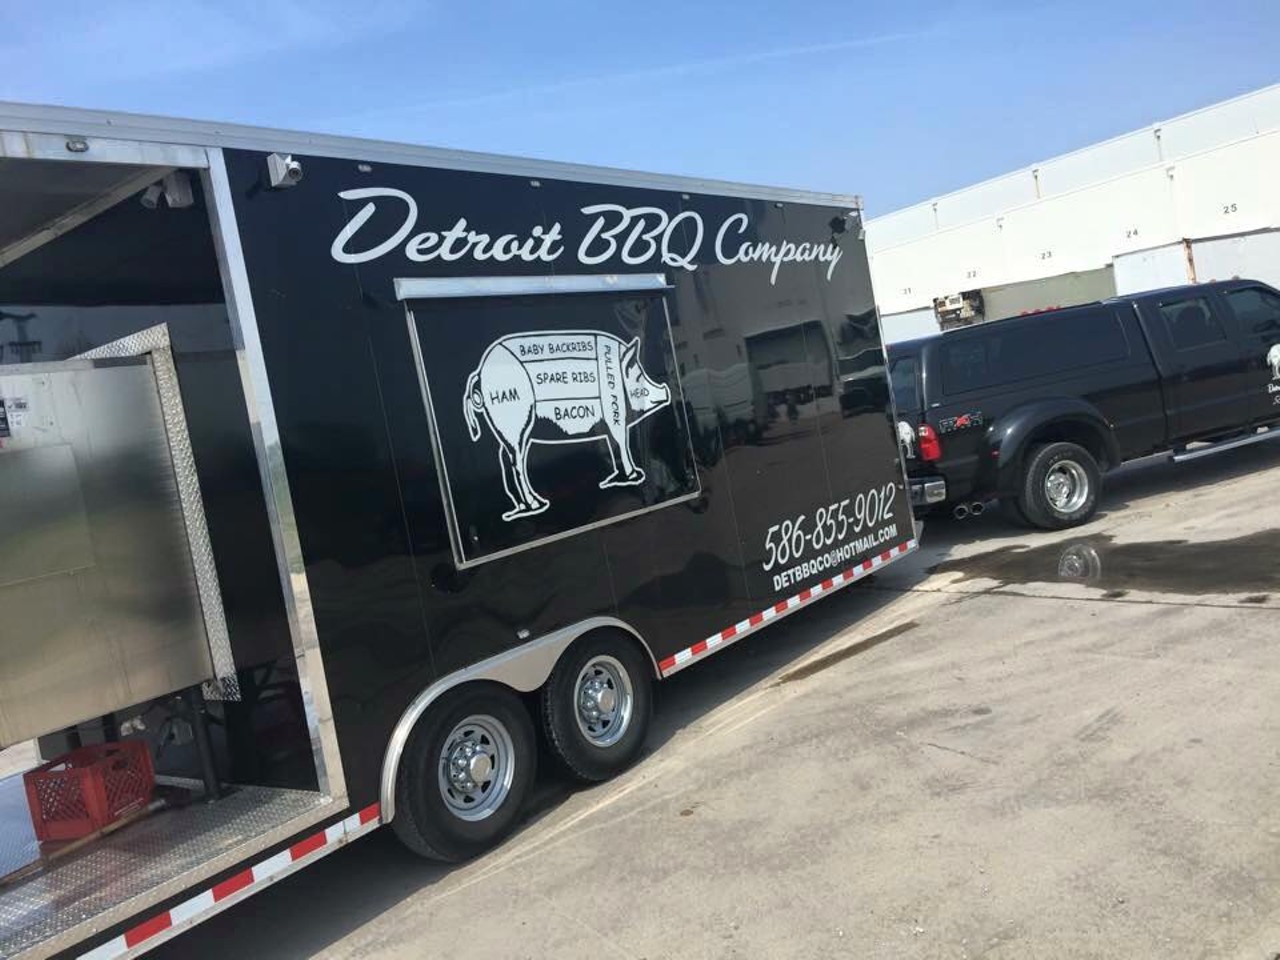 Detroit BBQ Company
Detroit, MI